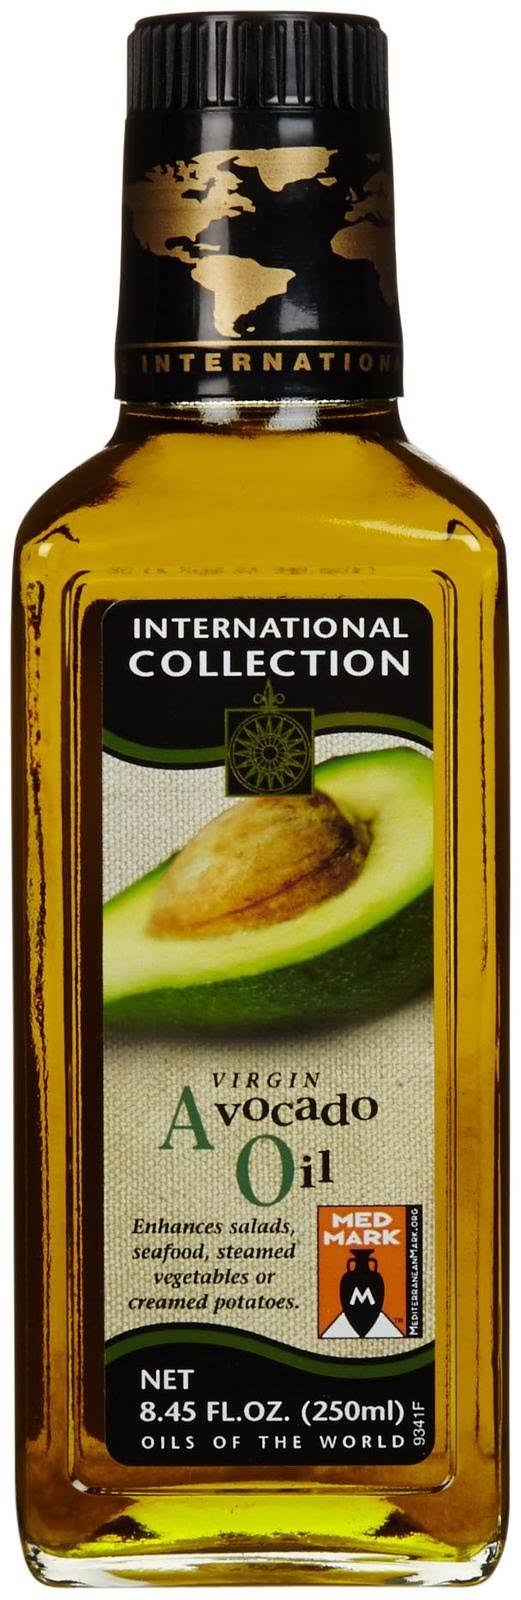 International Collection Avocado Oil - Virgin - 8.45 Fl Oz - Case Of 6